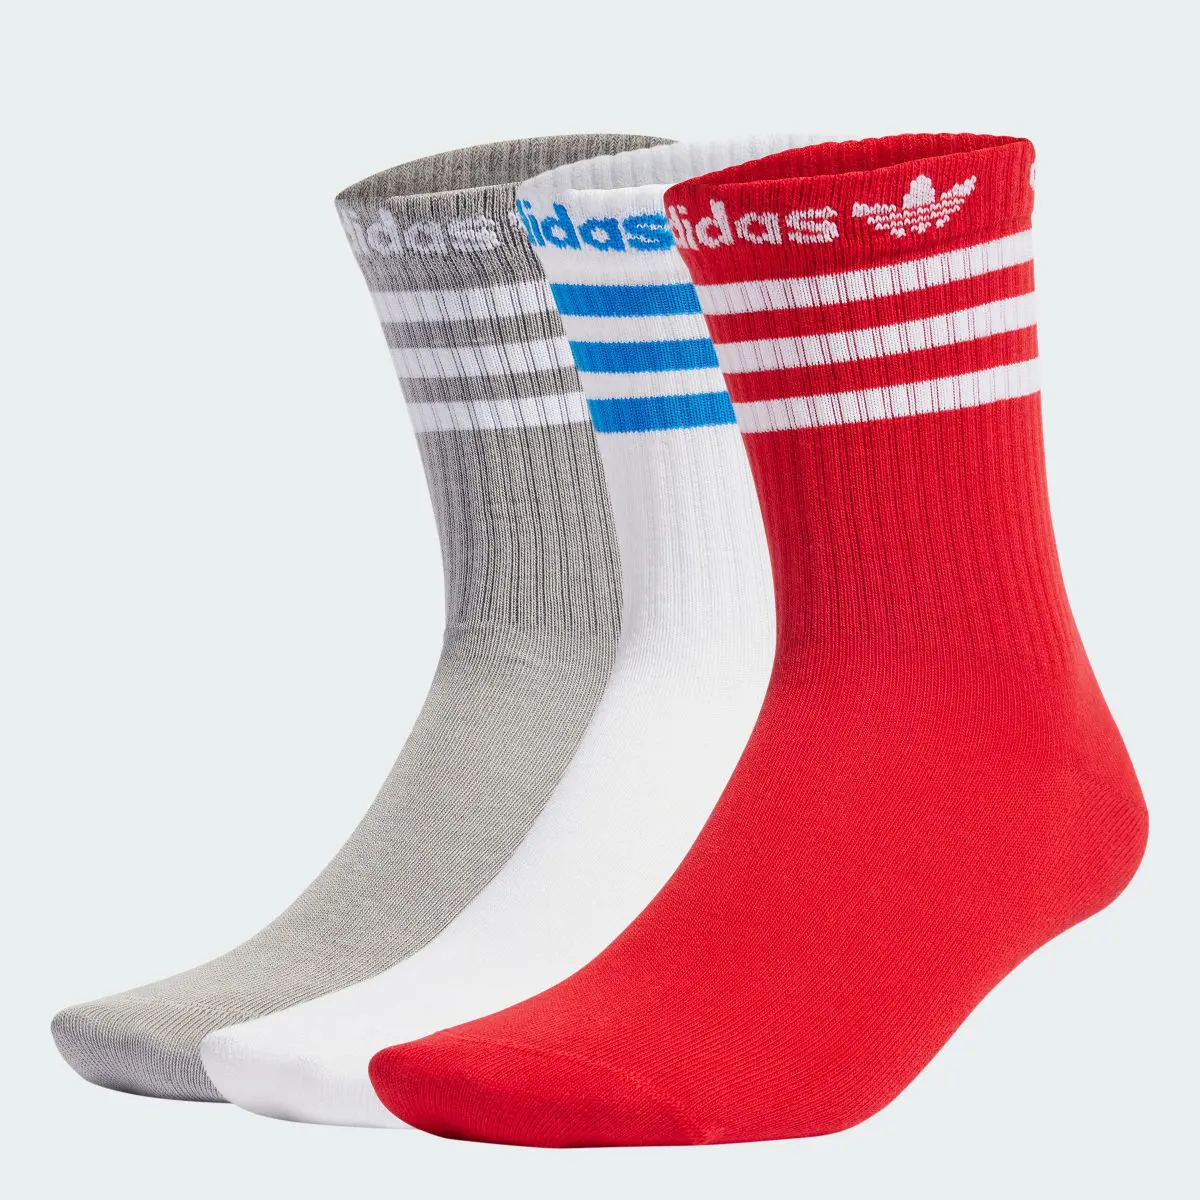 Adidas Crew Socks 3 Pairs. 1